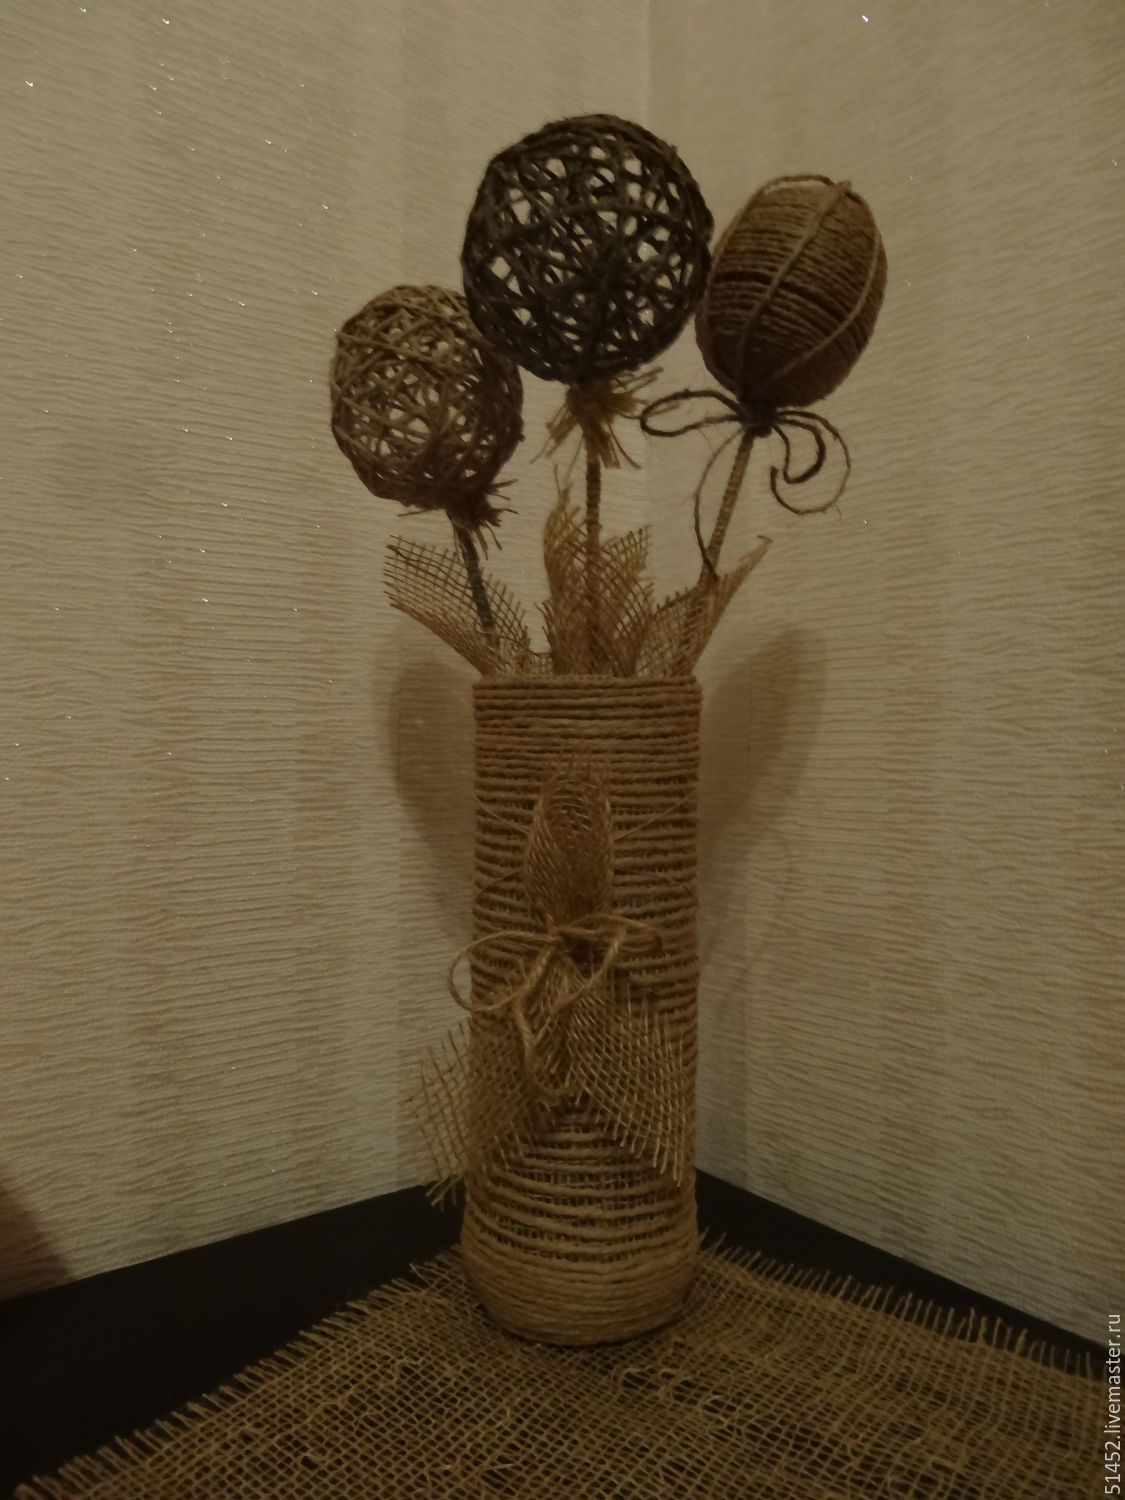 Стеклянная ваза для цветов декоративная интерьерная Шар Аквариум Подарок Сувенир 14 февраля 8 марта